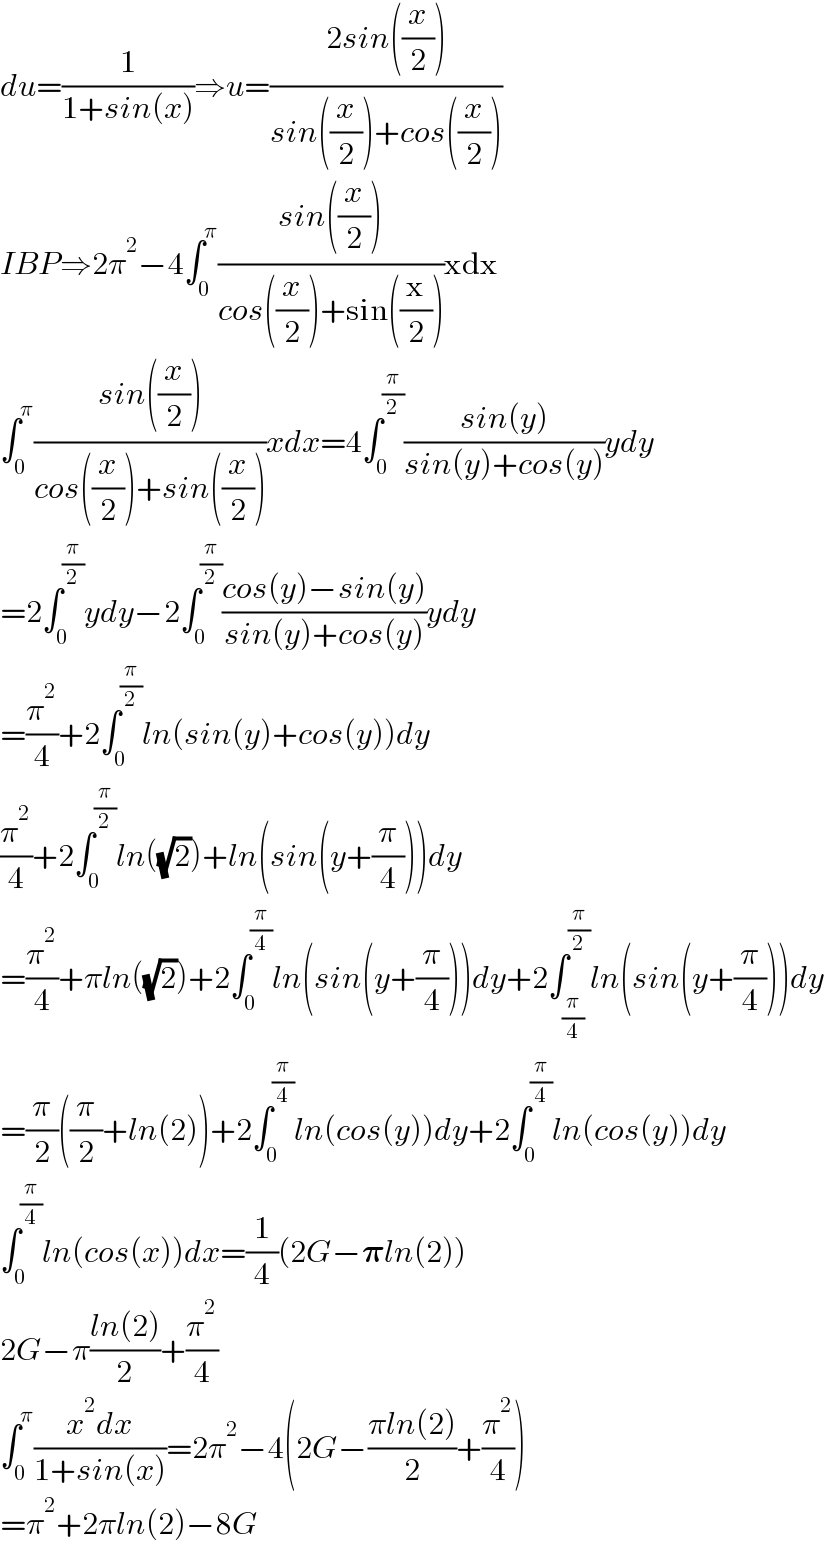 du=(1/(1+sin(x)))â‡’u=((2sin((x/2)))/(sin((x/2))+cos((x/2))))  IBPâ‡’2Ï€^2 âˆ’4âˆ«_0 ^Ï€ ((sin((x/2)))/(cos((x/2))+sin((x/2))))xdx  âˆ«_0 ^Ï€ ((sin((x/2)))/(cos((x/2))+sin((x/2))))xdx=4âˆ«_0 ^(Ï€/2) ((sin(y))/(sin(y)+cos(y)))ydy  =2âˆ«_0 ^(Ï€/2) ydyâˆ’2âˆ«_0 ^(Ï€/2) ((cos(y)âˆ’sin(y))/(sin(y)+cos(y)))ydy  =(Ï€^2 /4)+2âˆ«_0 ^(Ï€/2) ln(sin(y)+cos(y))dy  (Ï€^2 /4)+2âˆ«_0 ^(Ï€/2) ln((âˆš2))+ln(sin(y+(Ï€/4)))dy  =(Ï€^2 /4)+Ï€ln((âˆš2))+2âˆ«_0 ^(Ï€/4) ln(sin(y+(Ï€/4)))dy+2âˆ«_(Ï€/4) ^(Ï€/2) ln(sin(y+(Ï€/4)))dy  =(Ï€/2)((Ï€/2)+ln(2))+2âˆ«_0 ^(Ï€/4) ln(cos(y))dy+2âˆ«_0 ^(Ï€/4) ln(cos(y))dy  âˆ«_0 ^(Ï€/4) ln(cos(x))dx=(1/4)(2Gâˆ’ð�›‘ln(2))  2Gâˆ’Ï€((ln(2))/2)+(Ï€^2 /4)  âˆ«_0 ^Ï€ ((x^2 dx)/(1+sin(x)))=2Ï€^2 âˆ’4(2Gâˆ’((Ï€ln(2))/2)+(Ï€^2 /4))  =Ï€^2 +2Ï€ln(2)âˆ’8G  